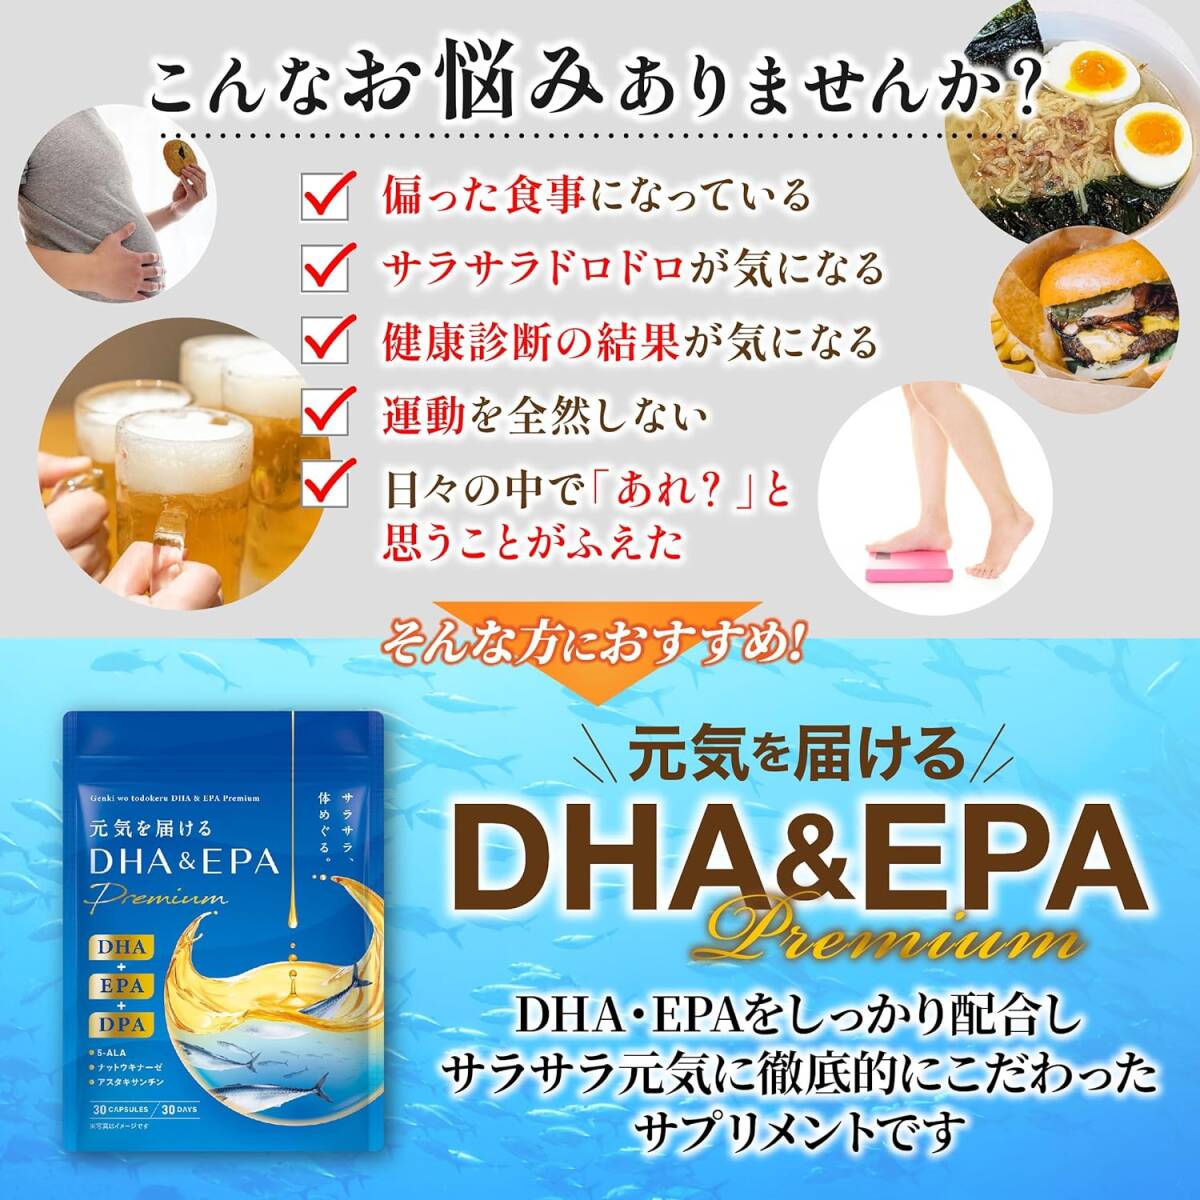 1袋 元気を届けるDHA＆EPA Premium DHA EPA DPA オメガ3 フィッシュオイル クリルオイル 5-ALA ナの画像3